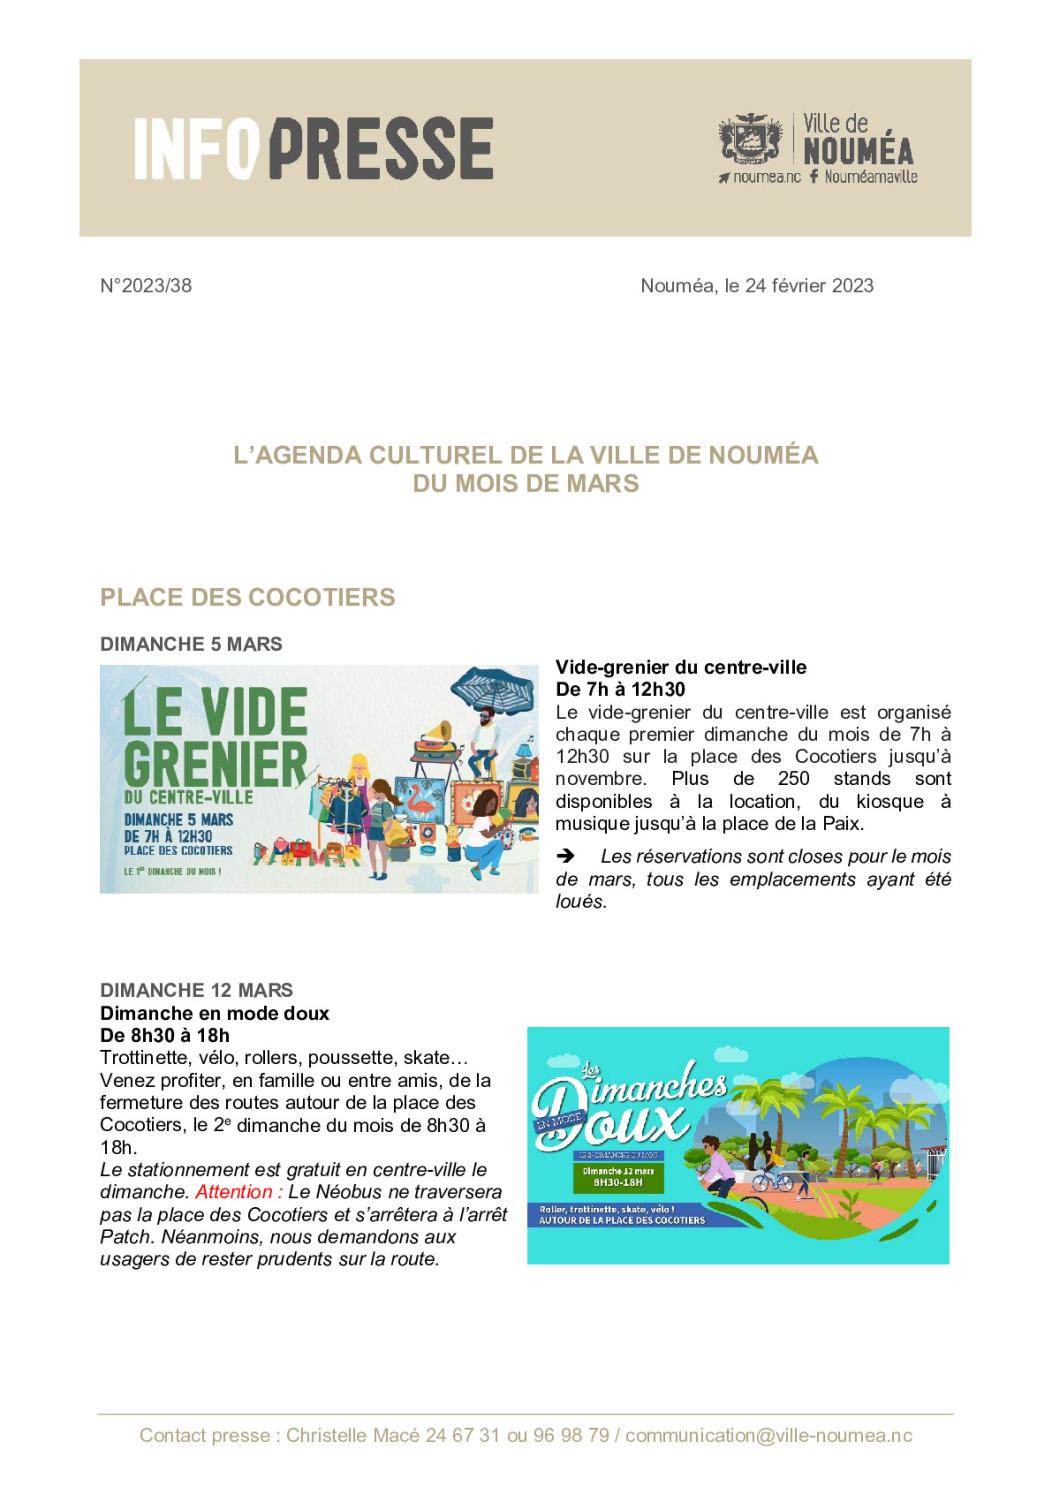 IP 38 Actualités culturelles - mars 2023.pdf